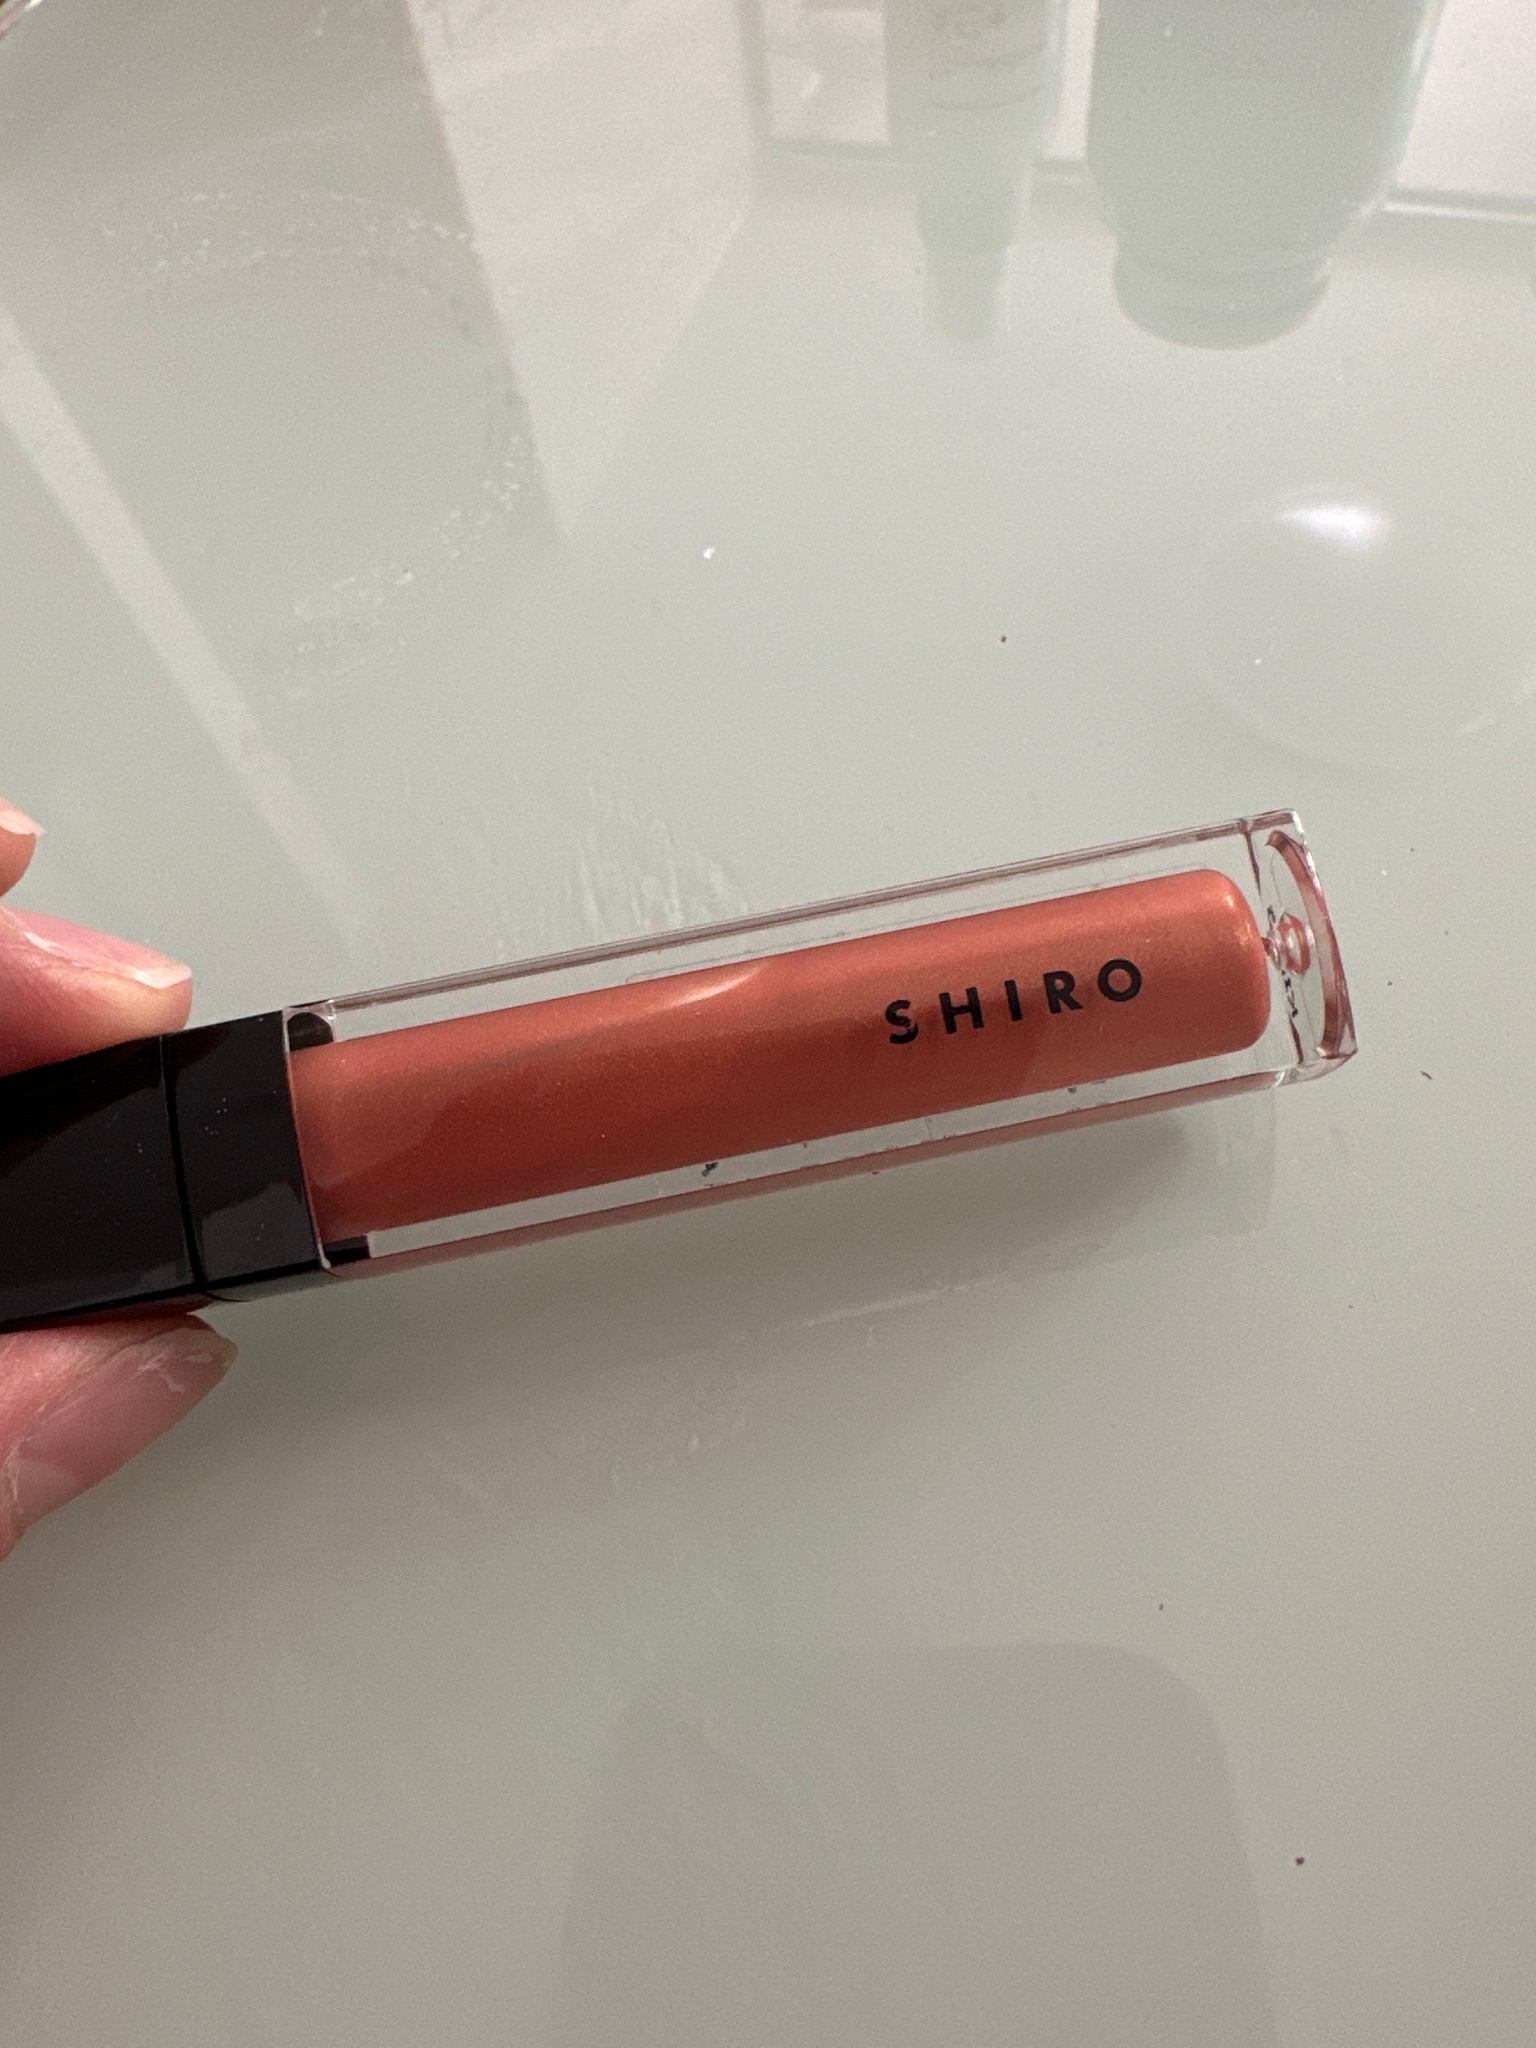 SHIRO / エッセンスリップオイルカラー 1I01 テラコッタの公式商品情報